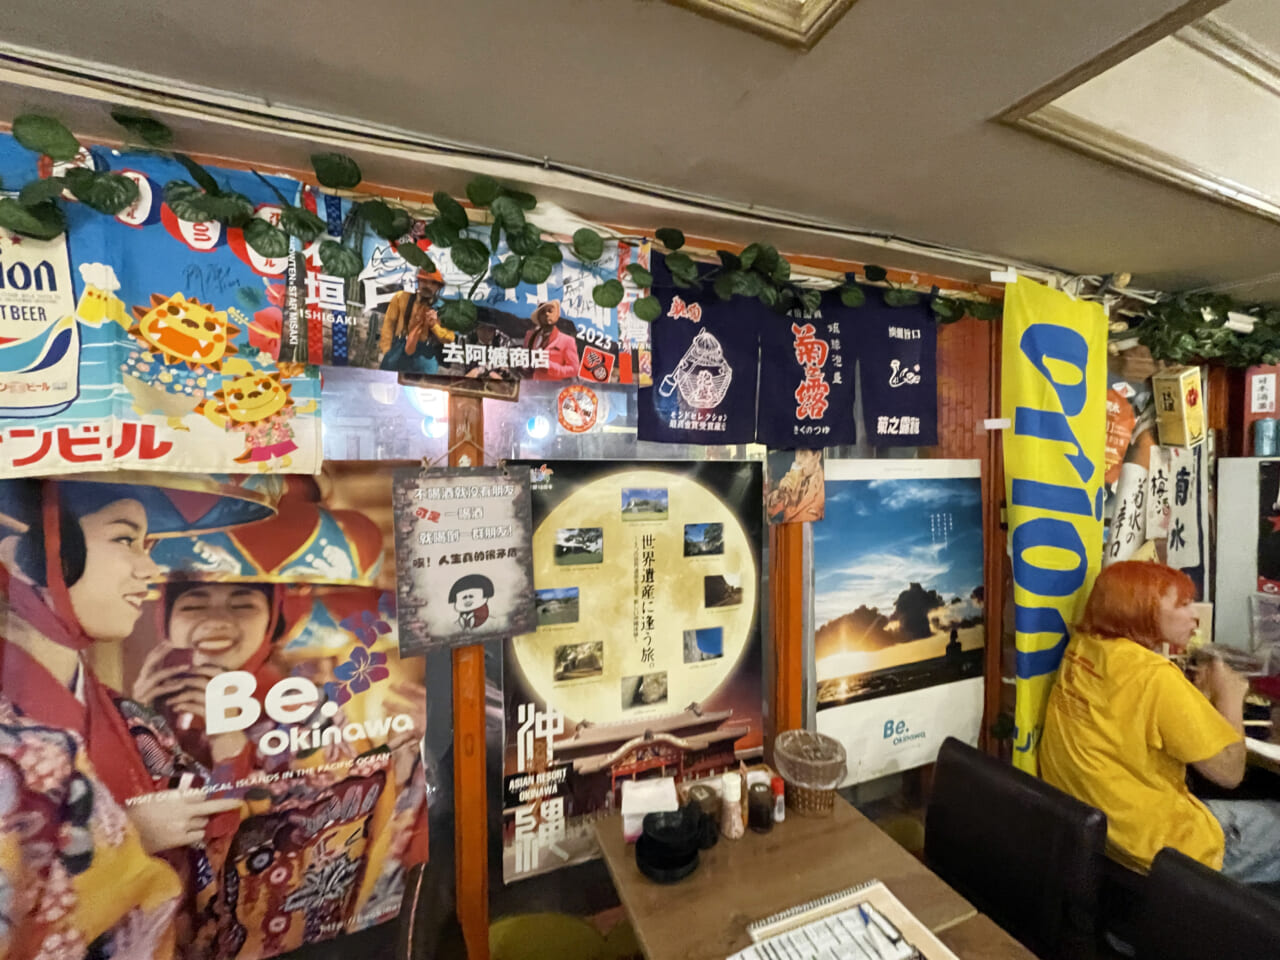 「圓酒（まるさけ）」は店中に沖縄のポスターや写真が張り詰められ、思いっきり沖縄の大衆酒場の雰囲気。